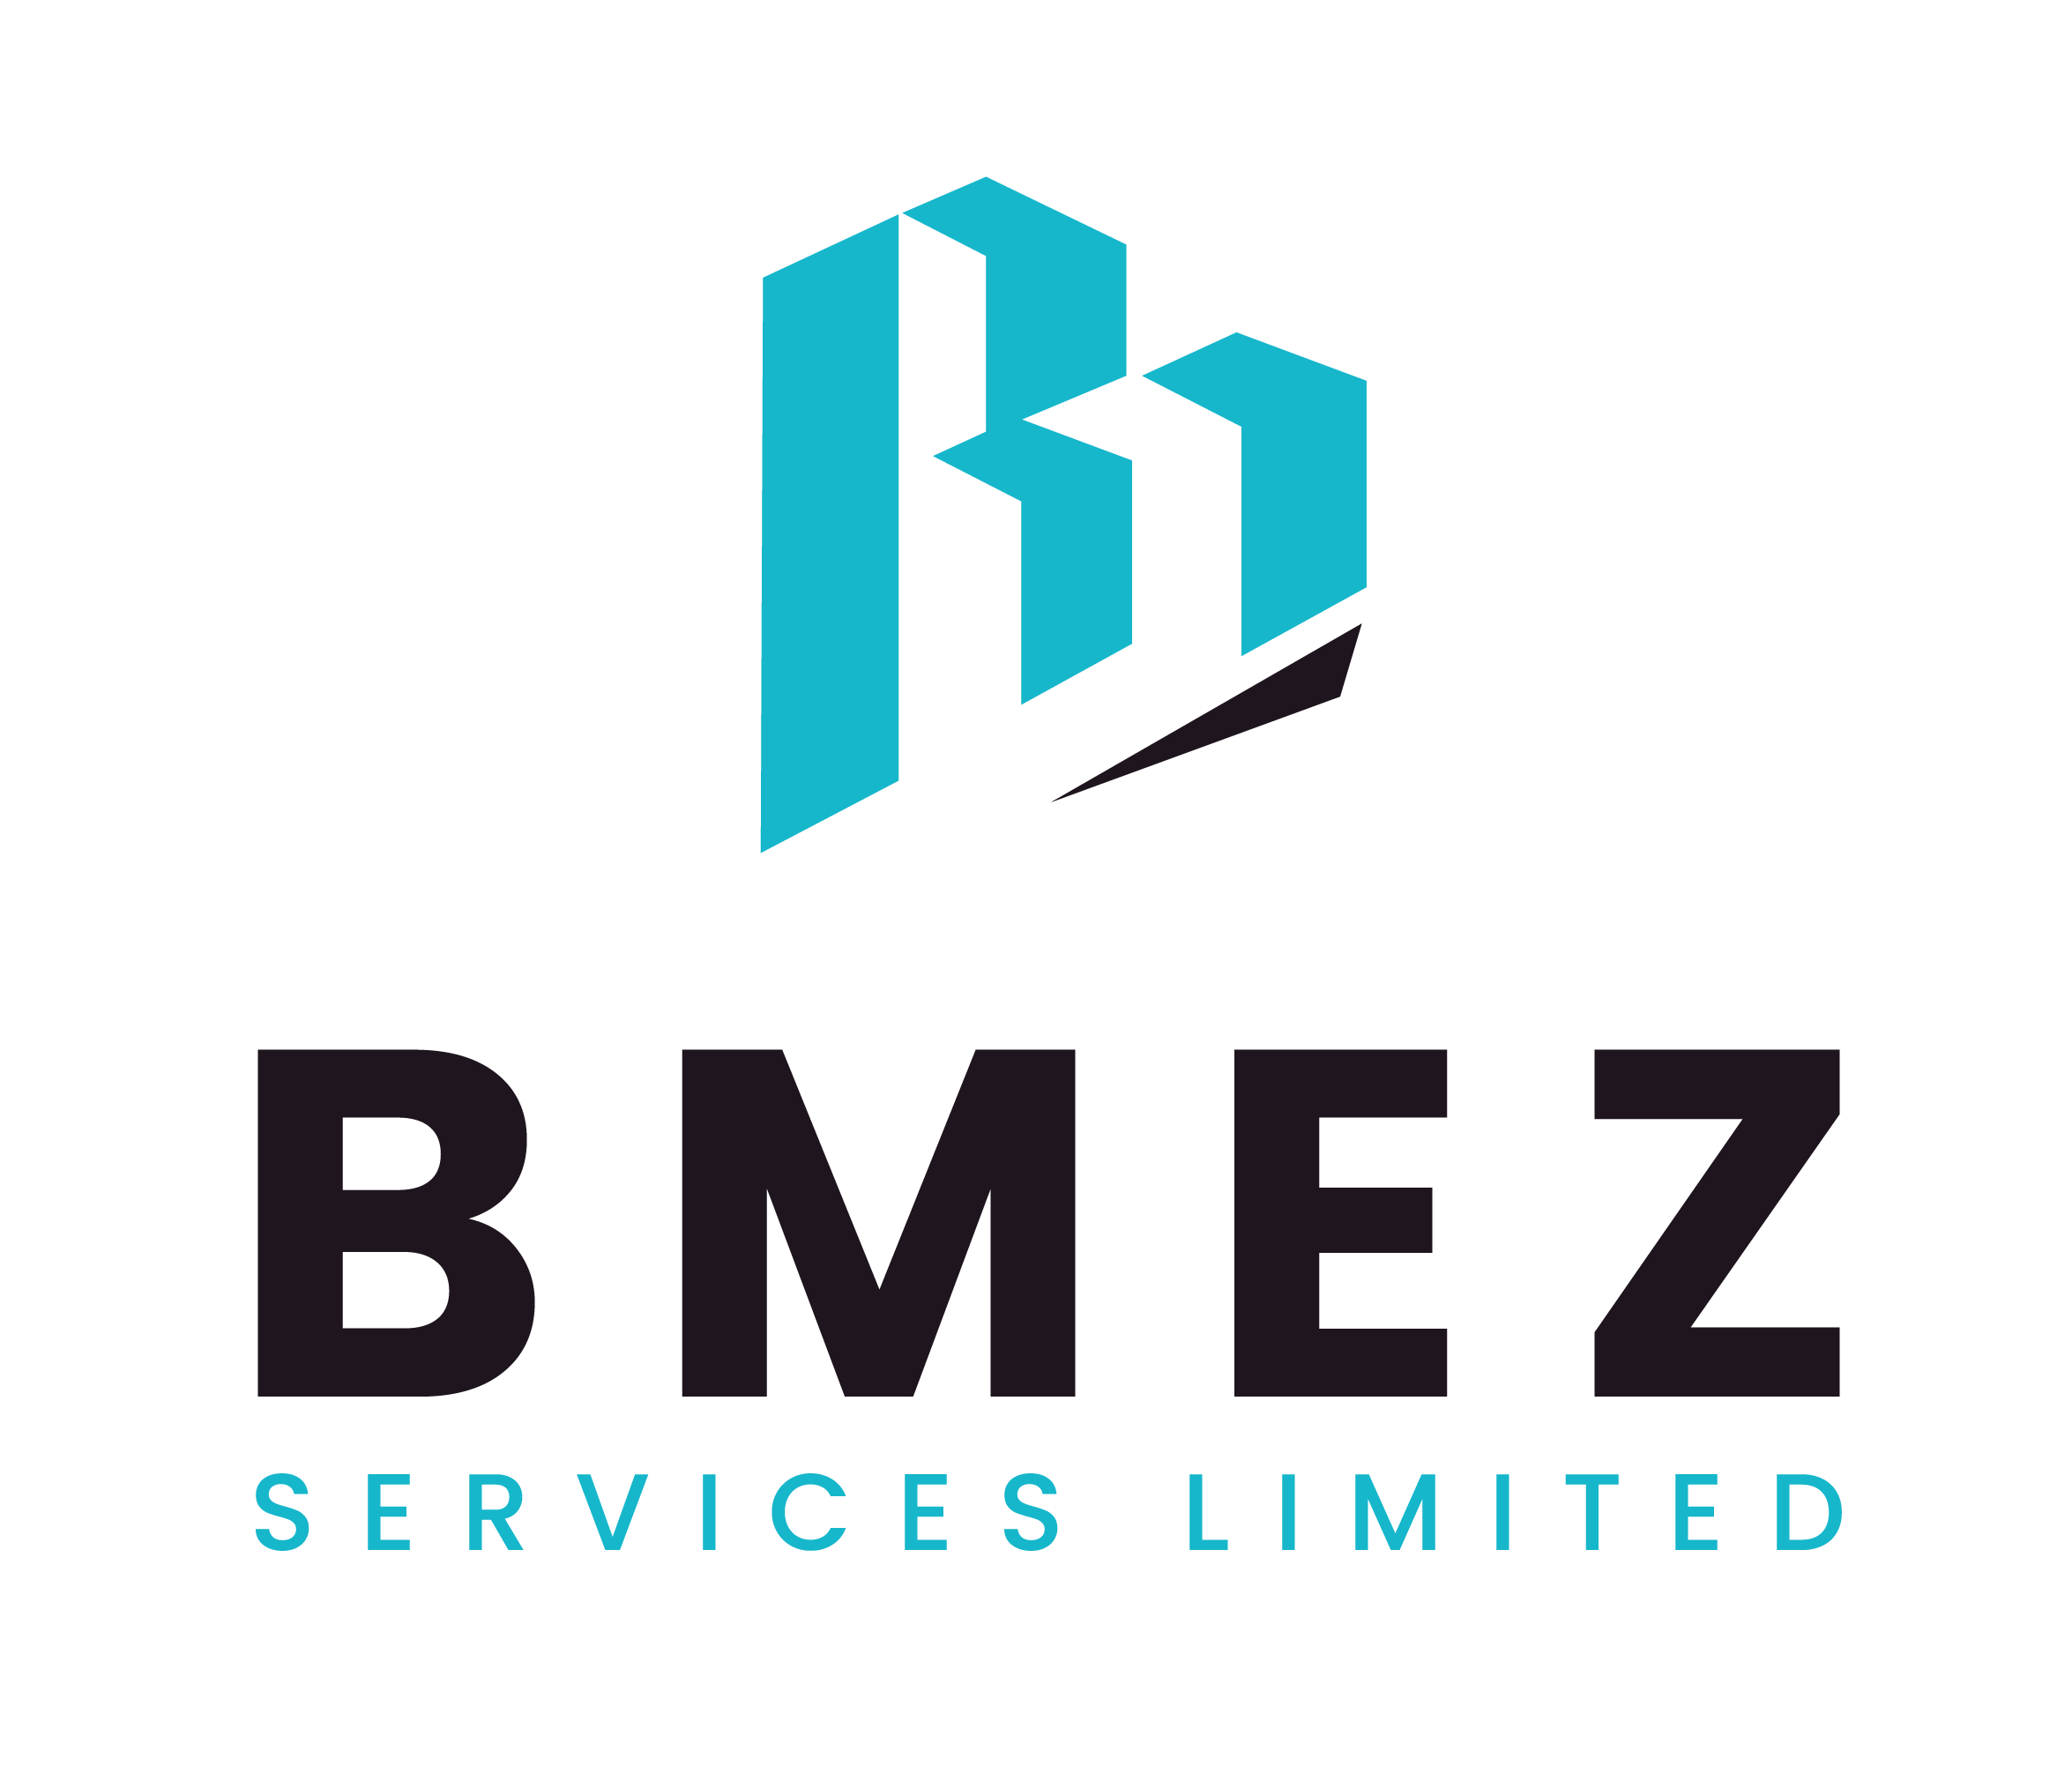 Bmez Services Limited